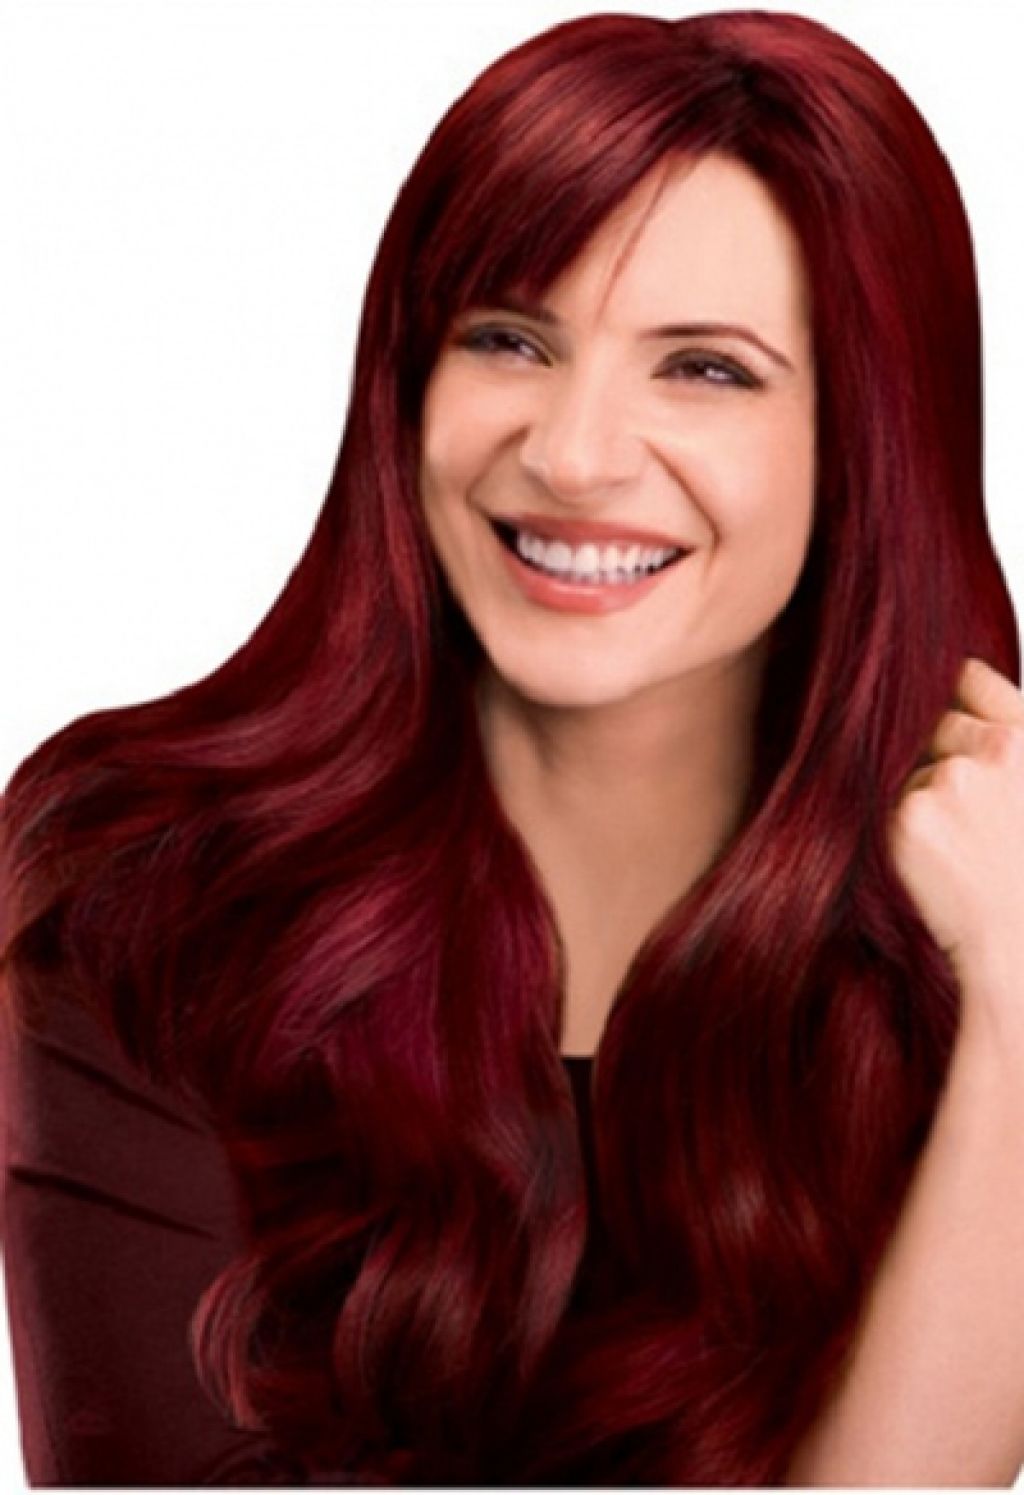 Tons mais populares da cor do cabelo vermelho